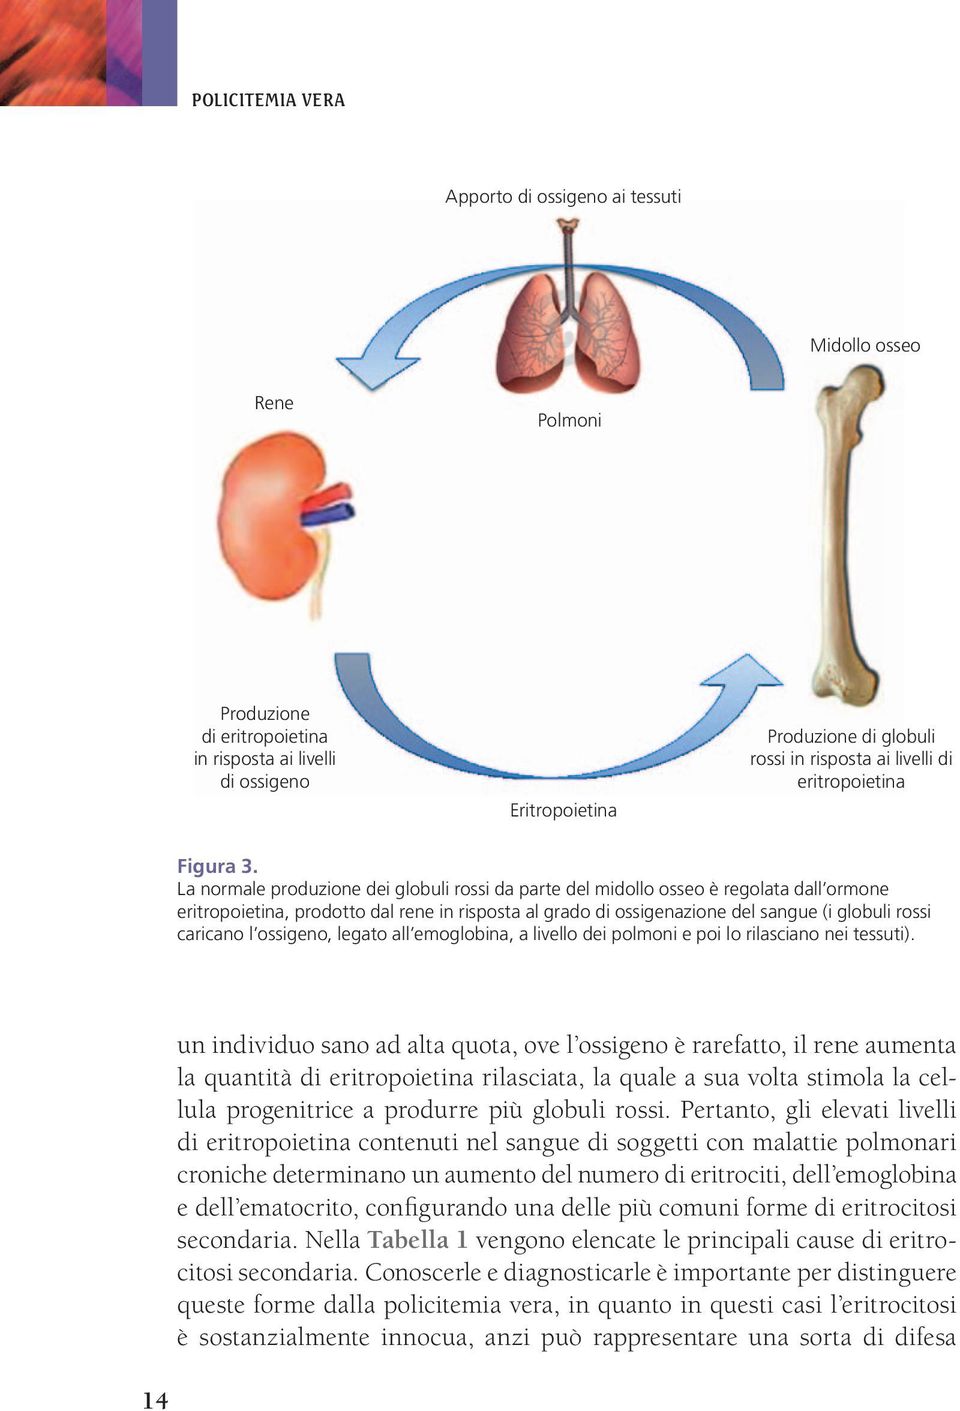 La normale produzione dei globuli rossi da parte del midollo osseo è regolata dall ormone eritropoietina, prodotto dal rene in risposta al grado di ossigenazione del sangue (i globuli rossi caricano